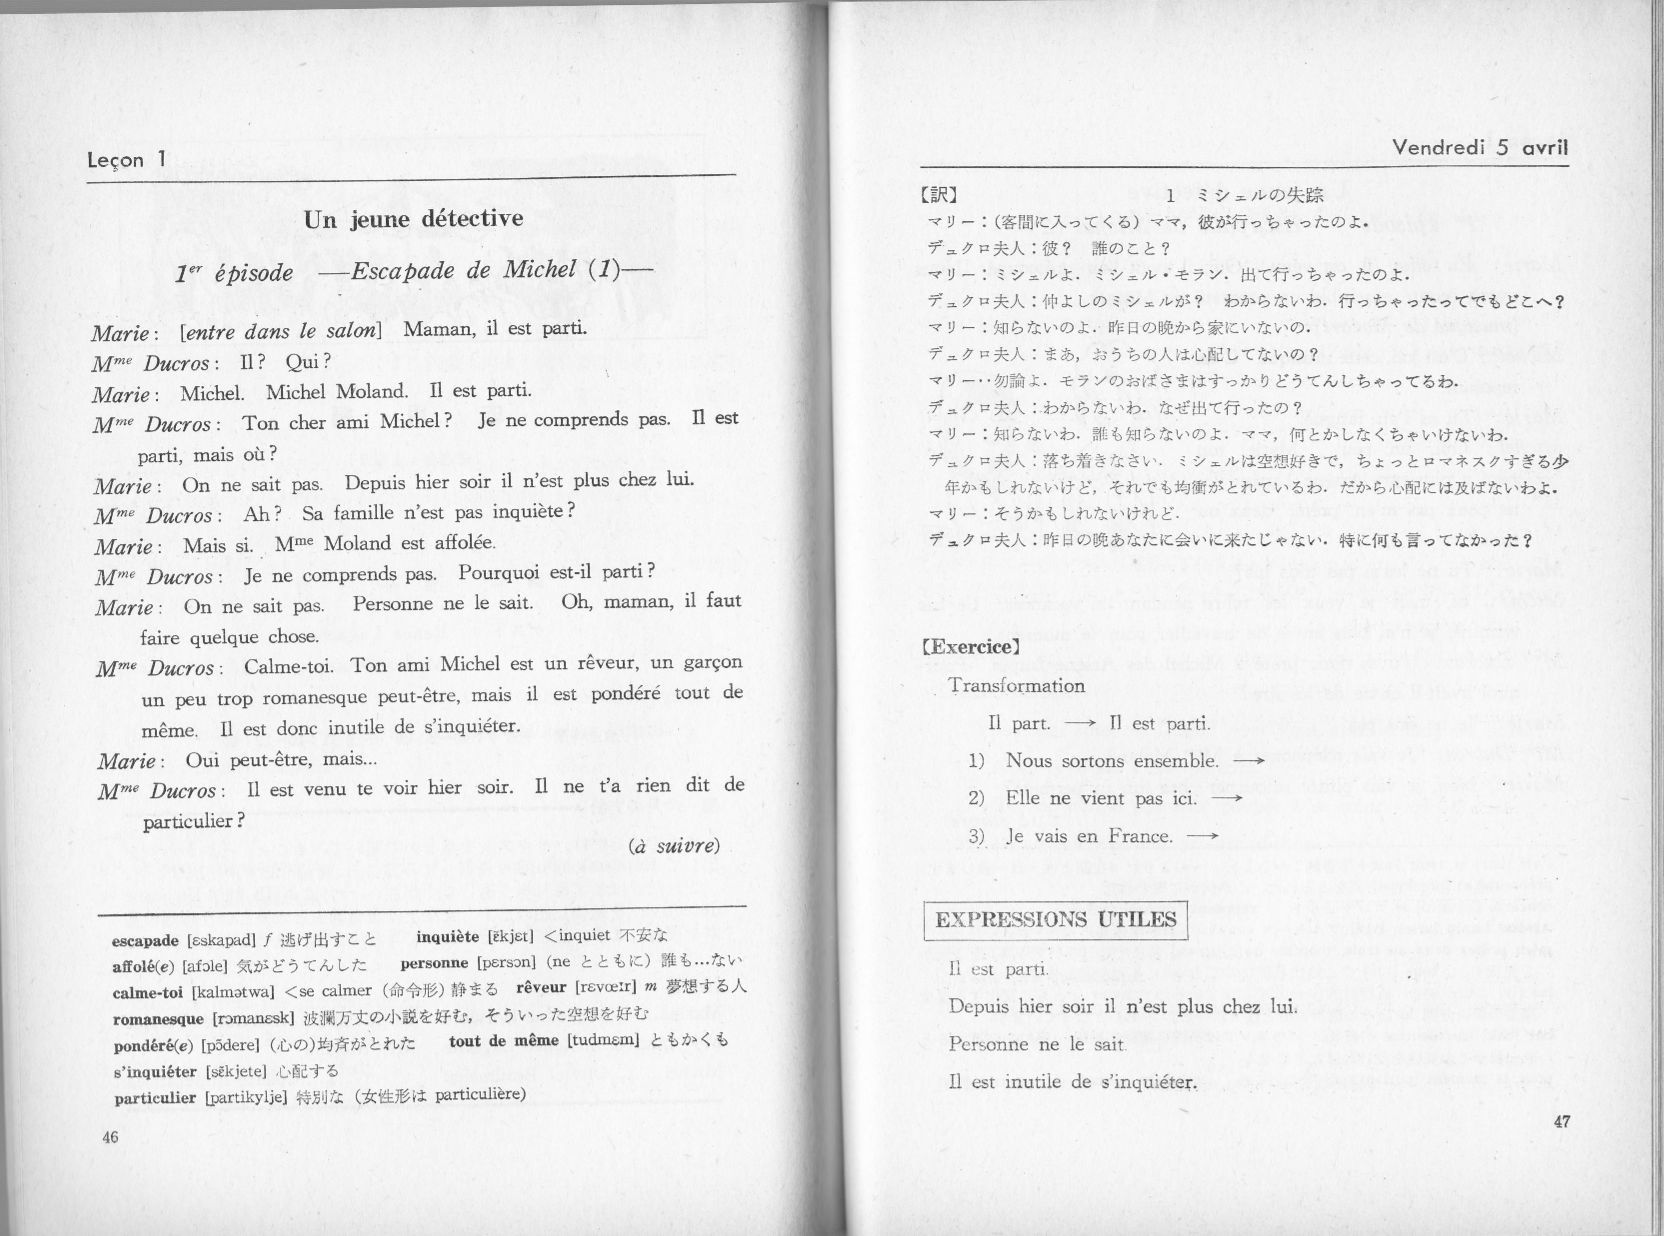 1974年「フランス語入門」応用編が基礎編とつながっていた時代 (16年10月2日) : 